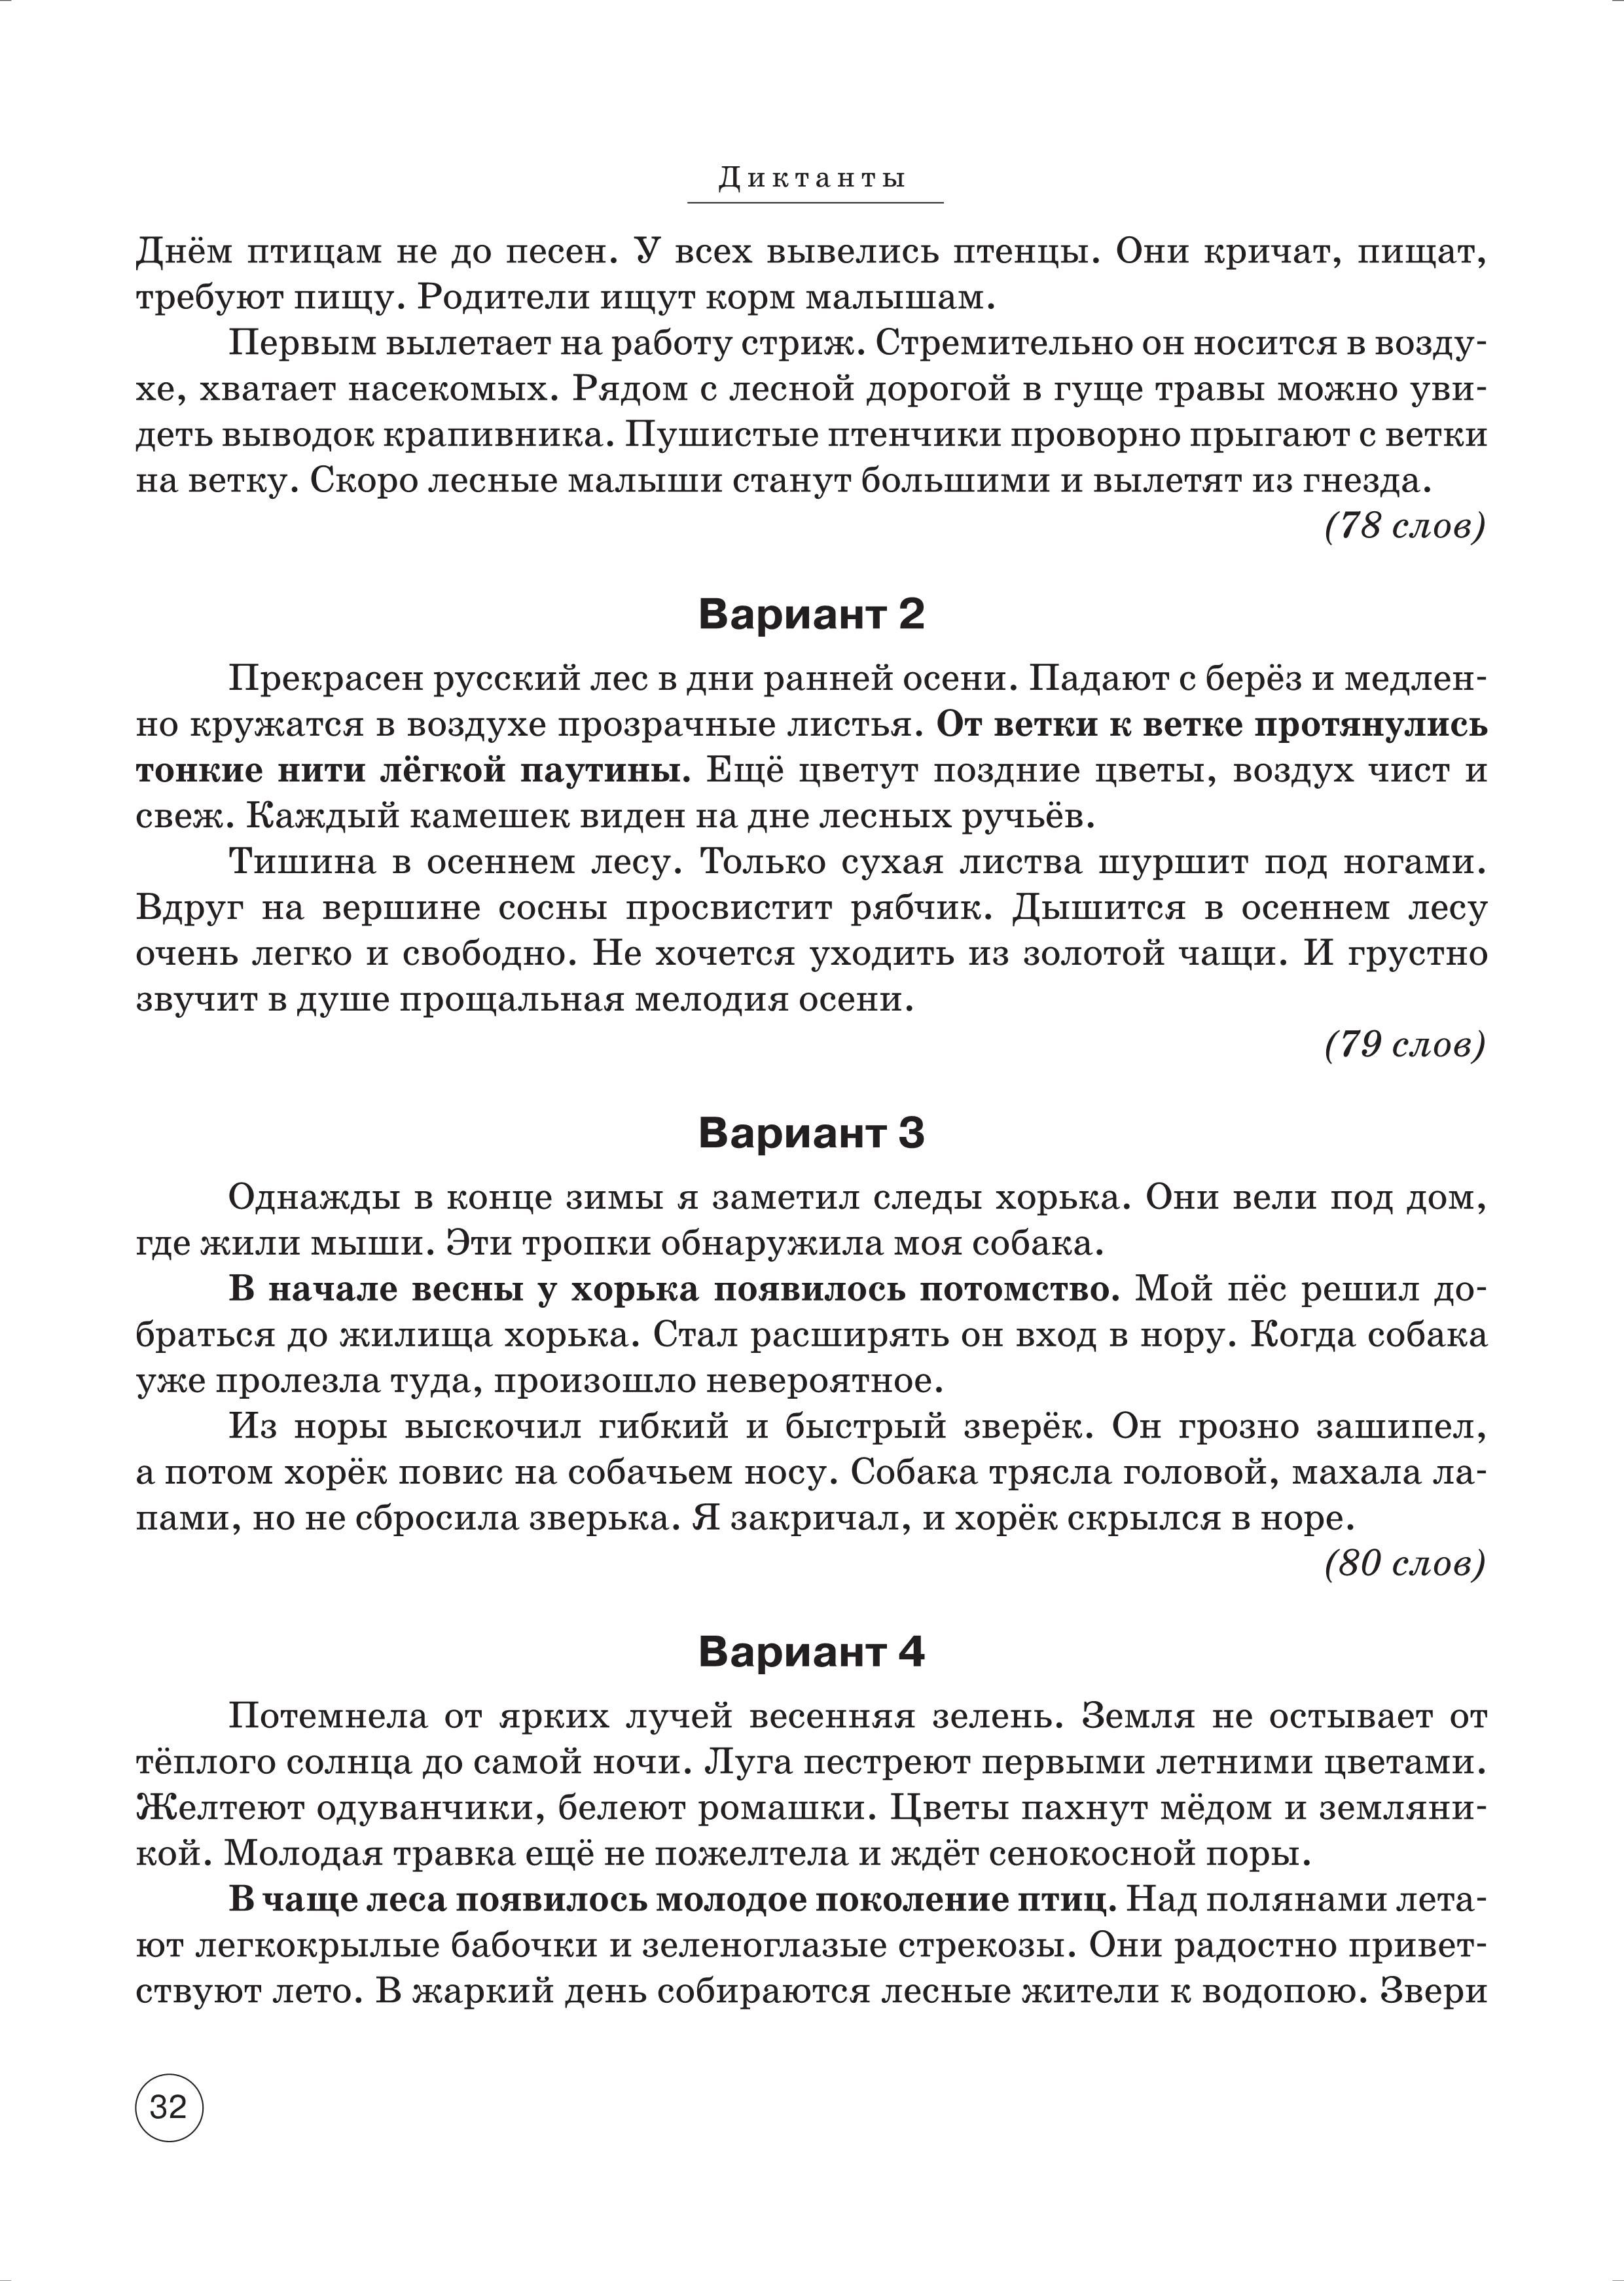 Русский язык. ВПР. 4-й класс. 10 тренировочных вариантов. Изд. 3-е. Рекомендовано ФИОКО